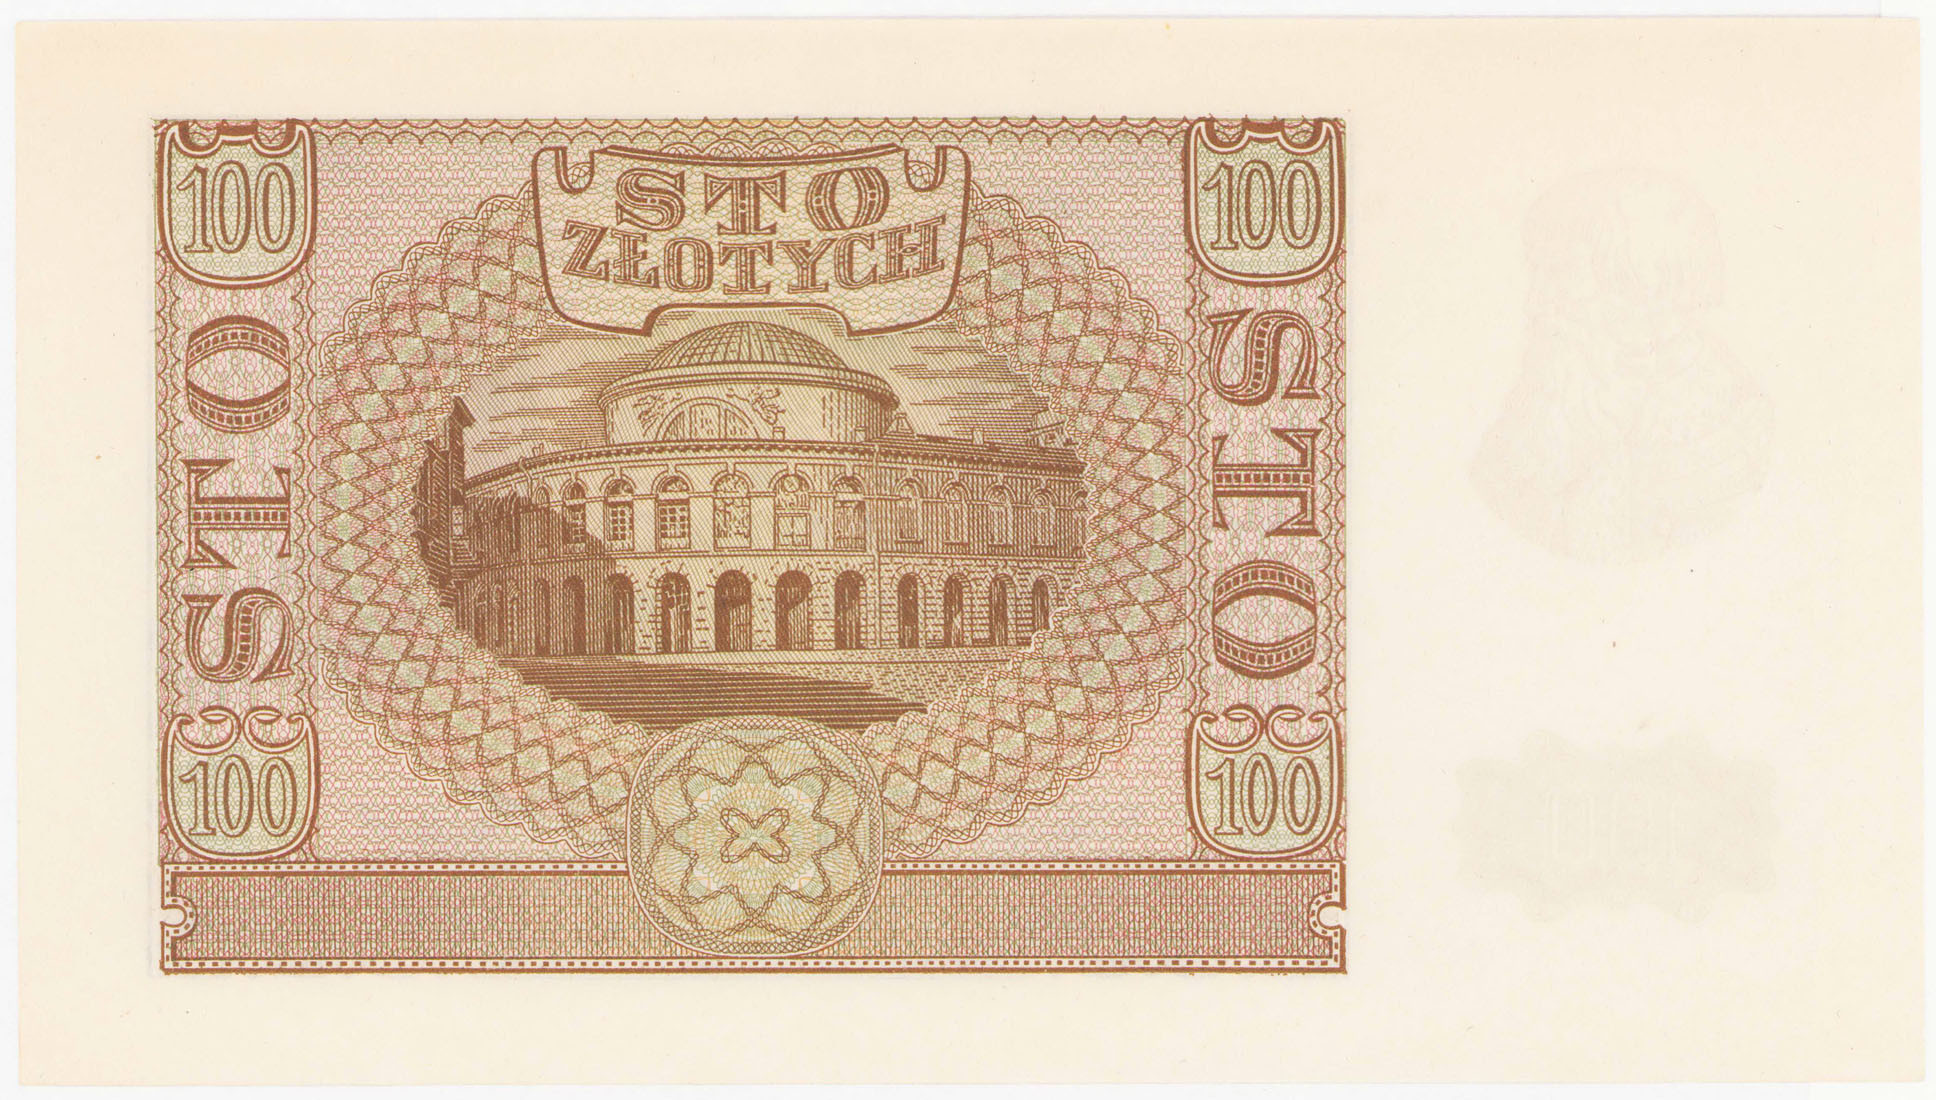 100 złotych 1940 seria A